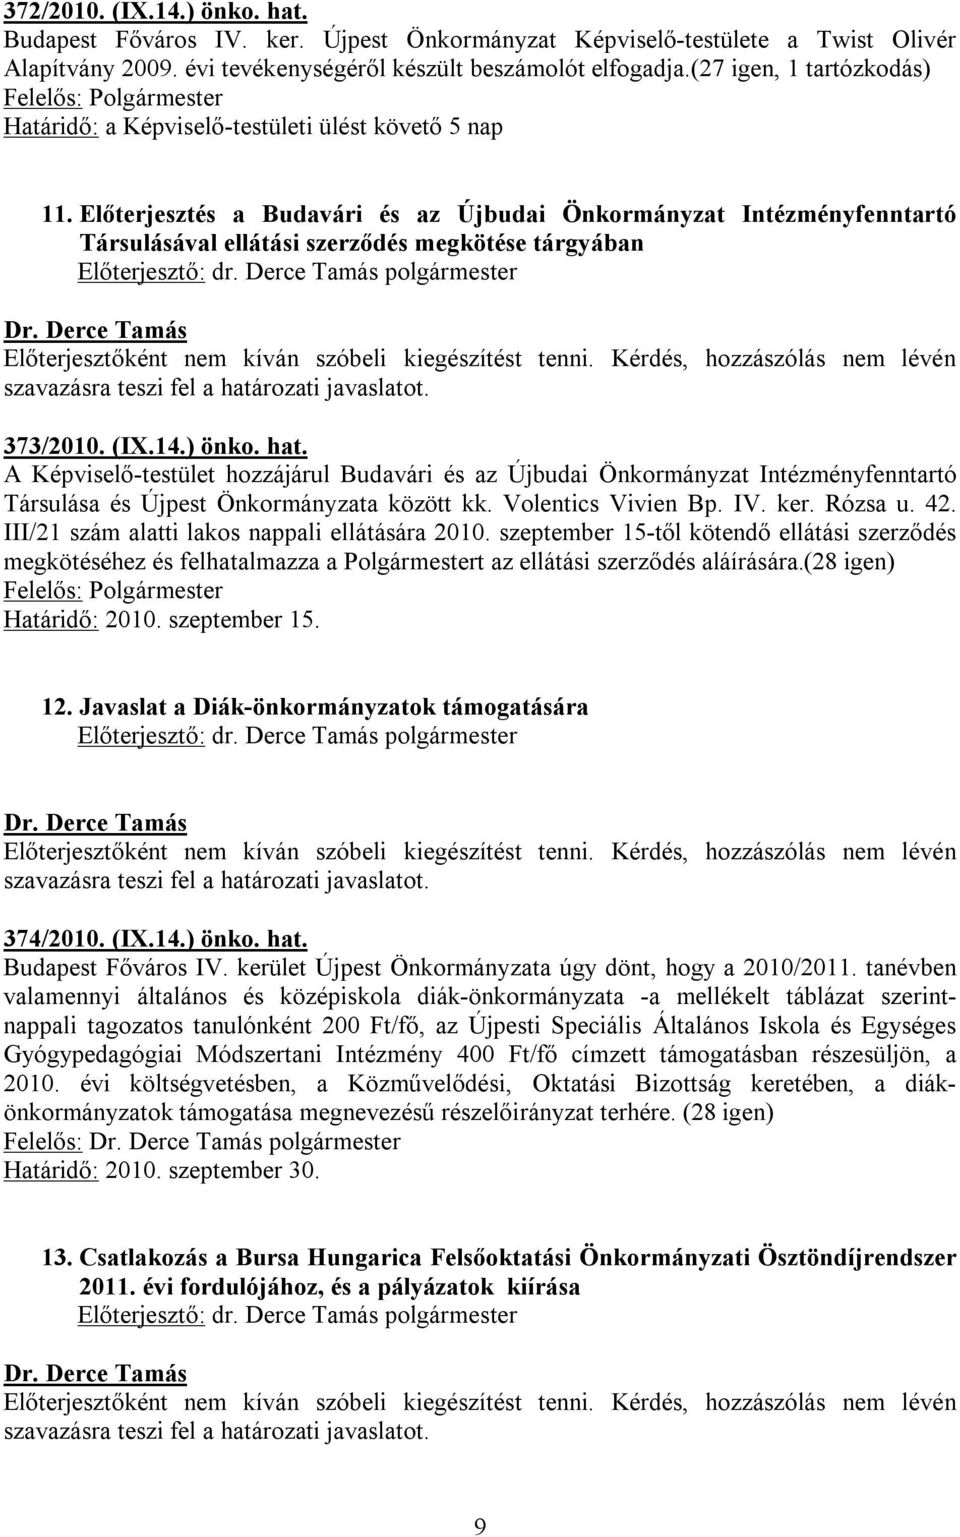 Előterjesztés a Budavári és az Újbudai Önkormányzat Intézményfenntartó Társulásával ellátási szerződés megkötése tárgyában 373/2010. (IX.14.) önko. hat.